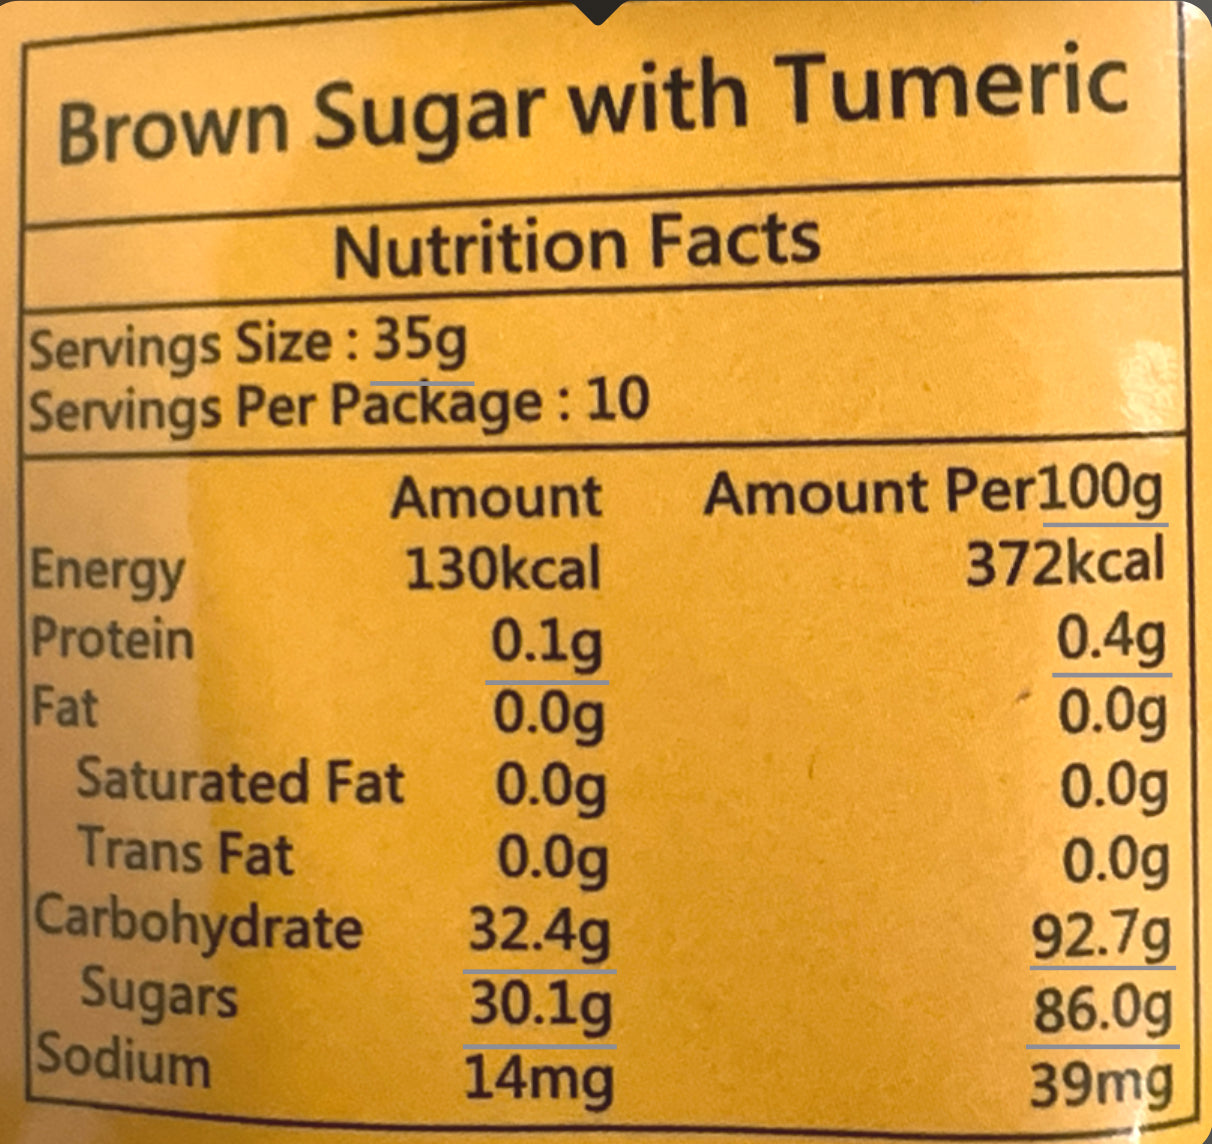 Brown Sugar with Turmeric herbal drink